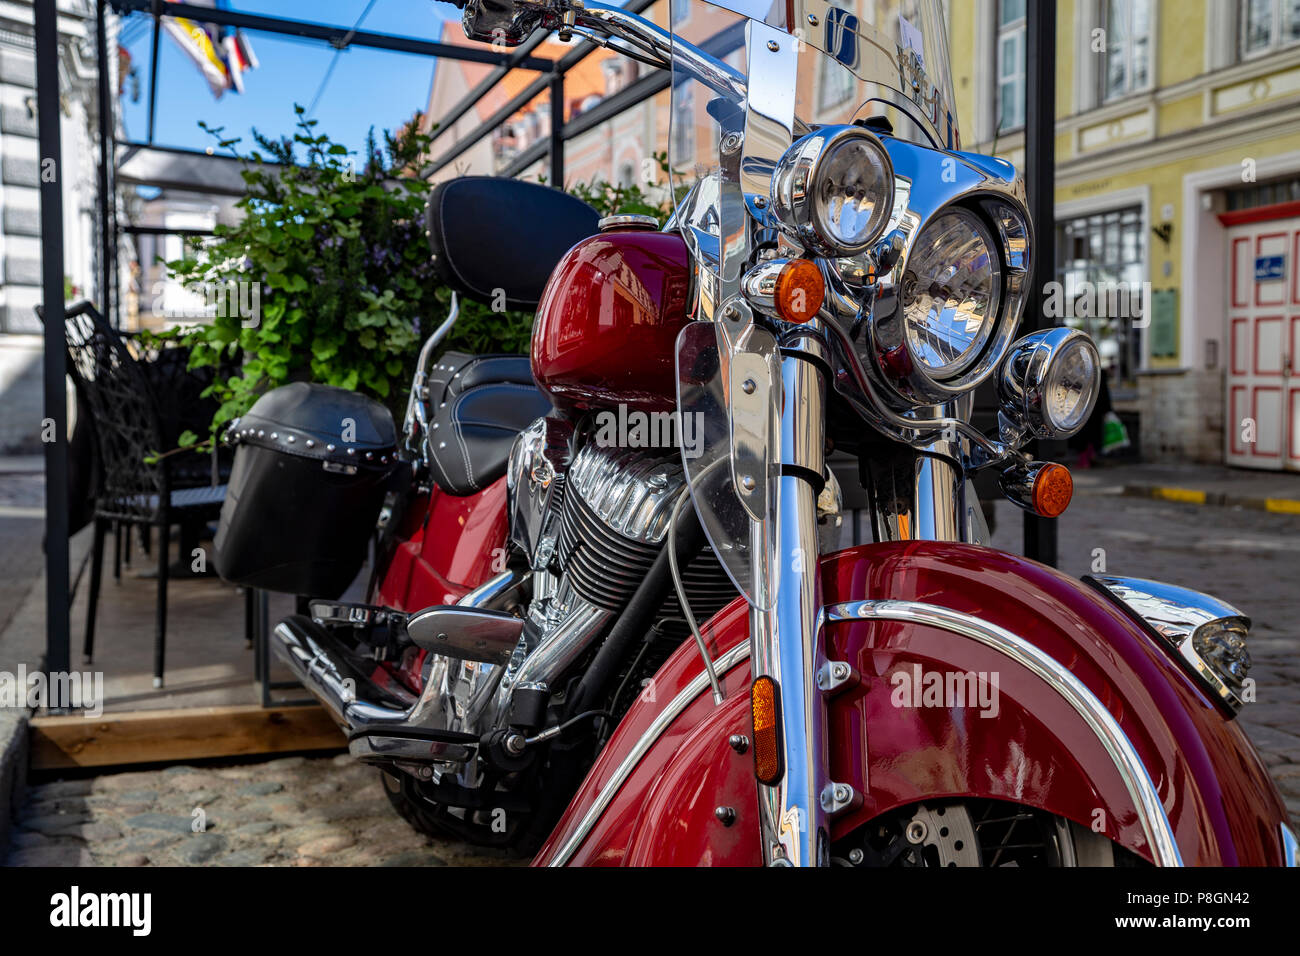 Bmw Motorrad auf der Straße von Tallin, Estland Stockfotografie - Alamy